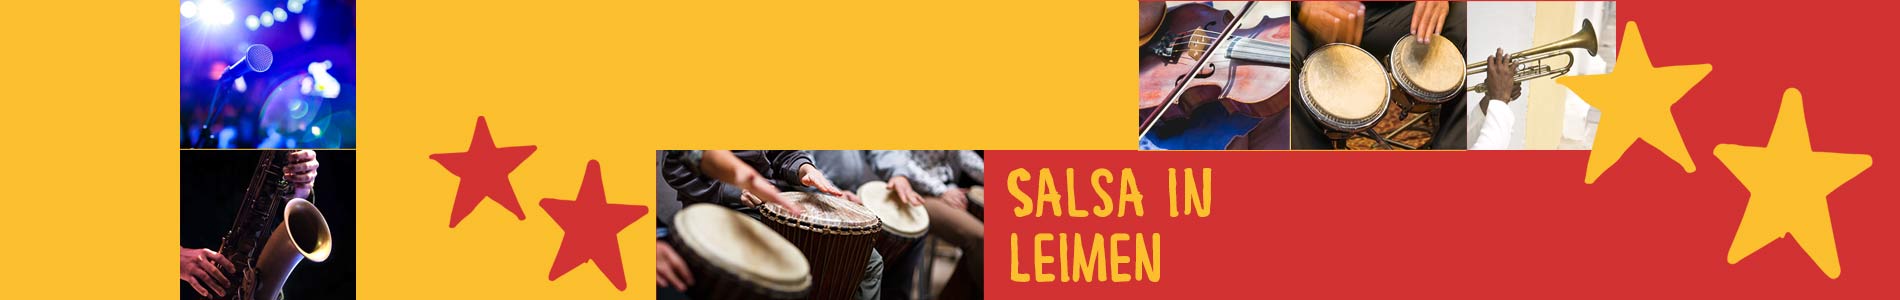 Salsa in Leimen – Salsa lernen und tanzen, Tanzkurse, Partys, Veranstaltungen